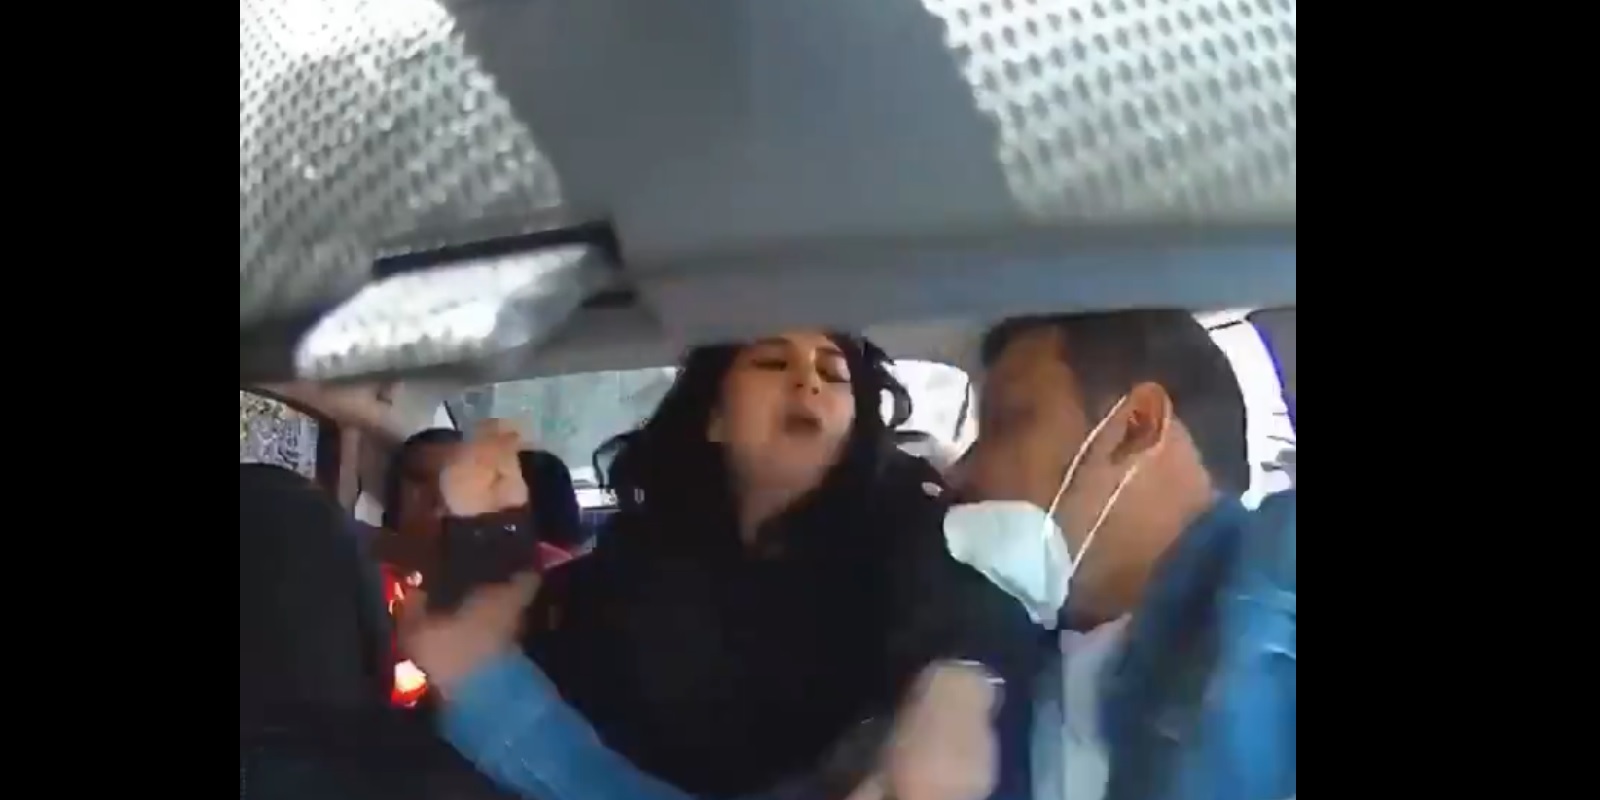 Пассажирки Uber начали кашлять на водителя и залили его газом из-за просьбы правильно надеть маски (видео)